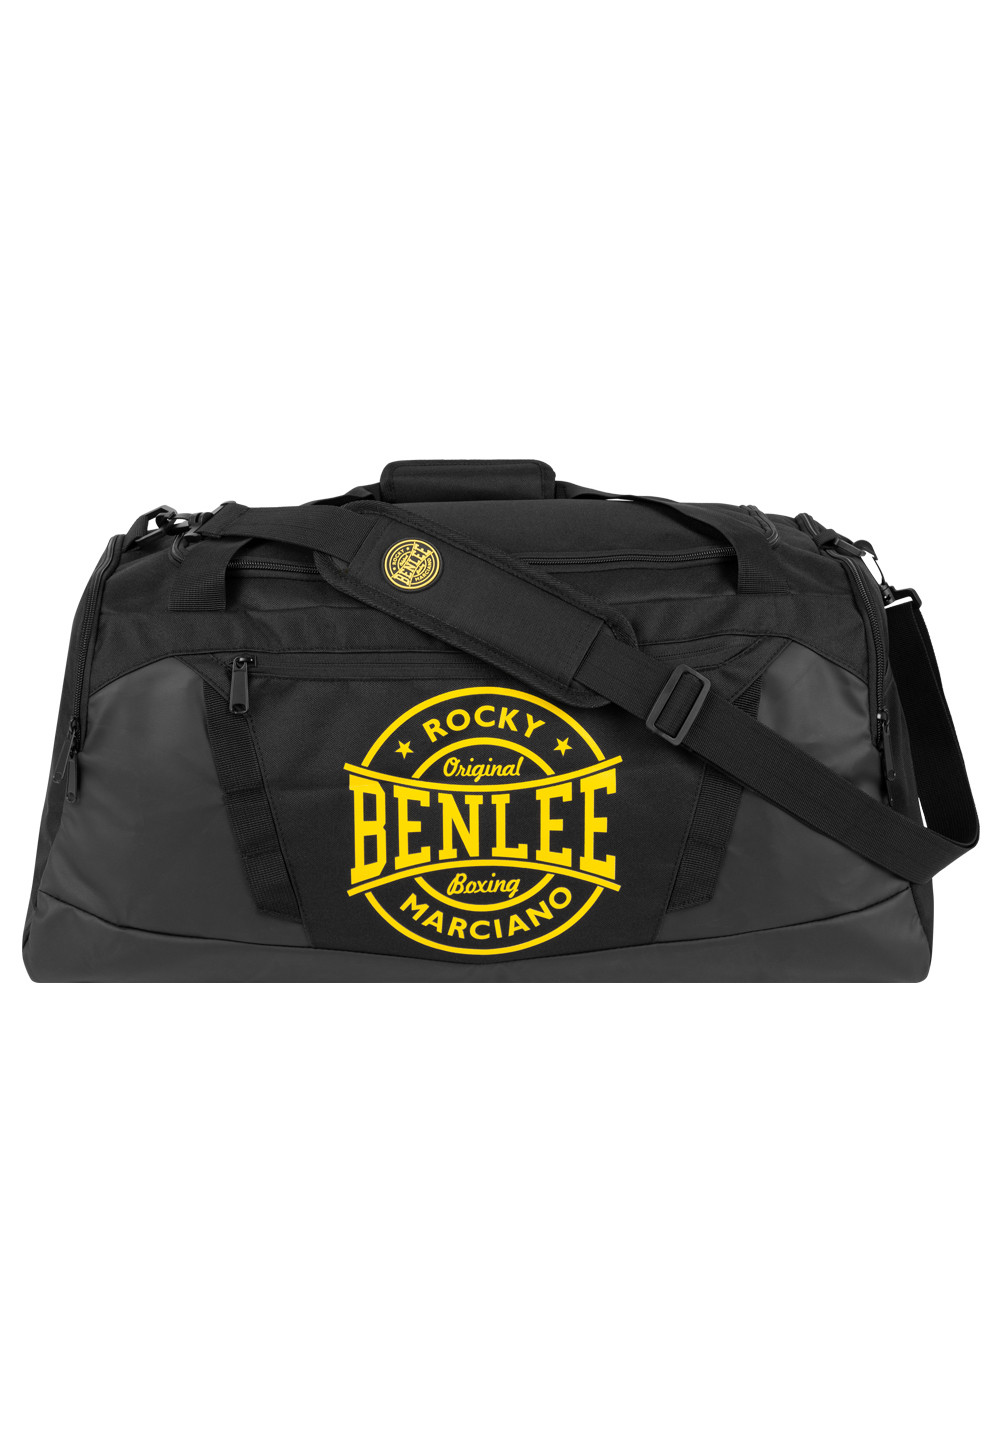 Benlee Sports bag